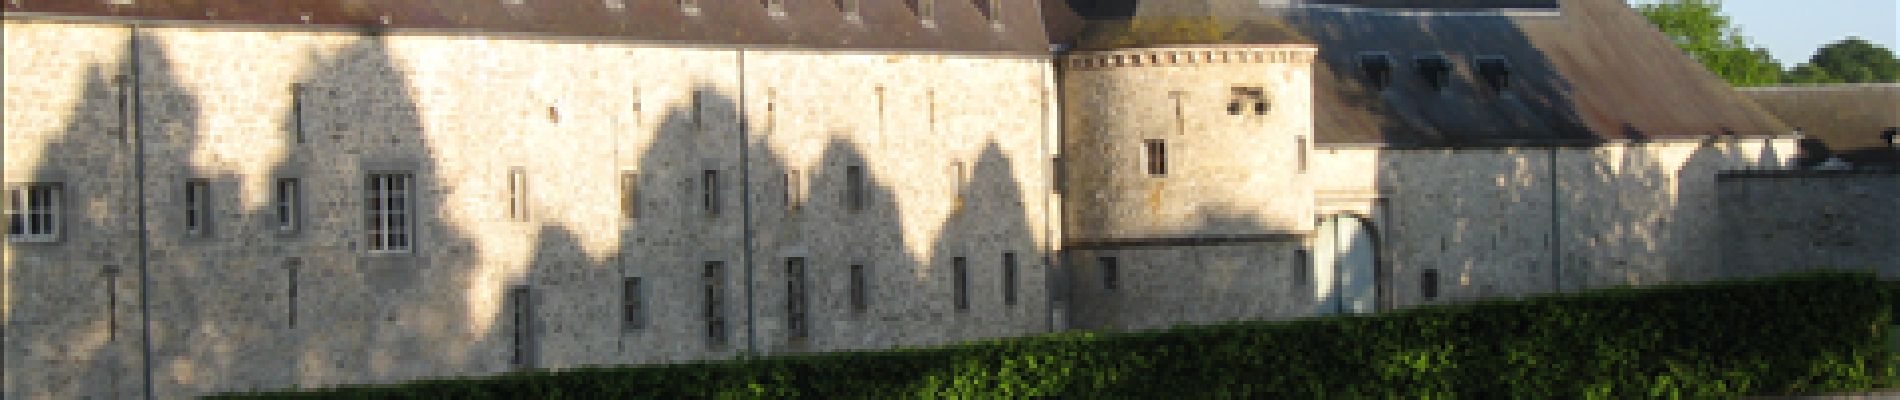 POI Modave - Château des Comtes de Marchin - Photo